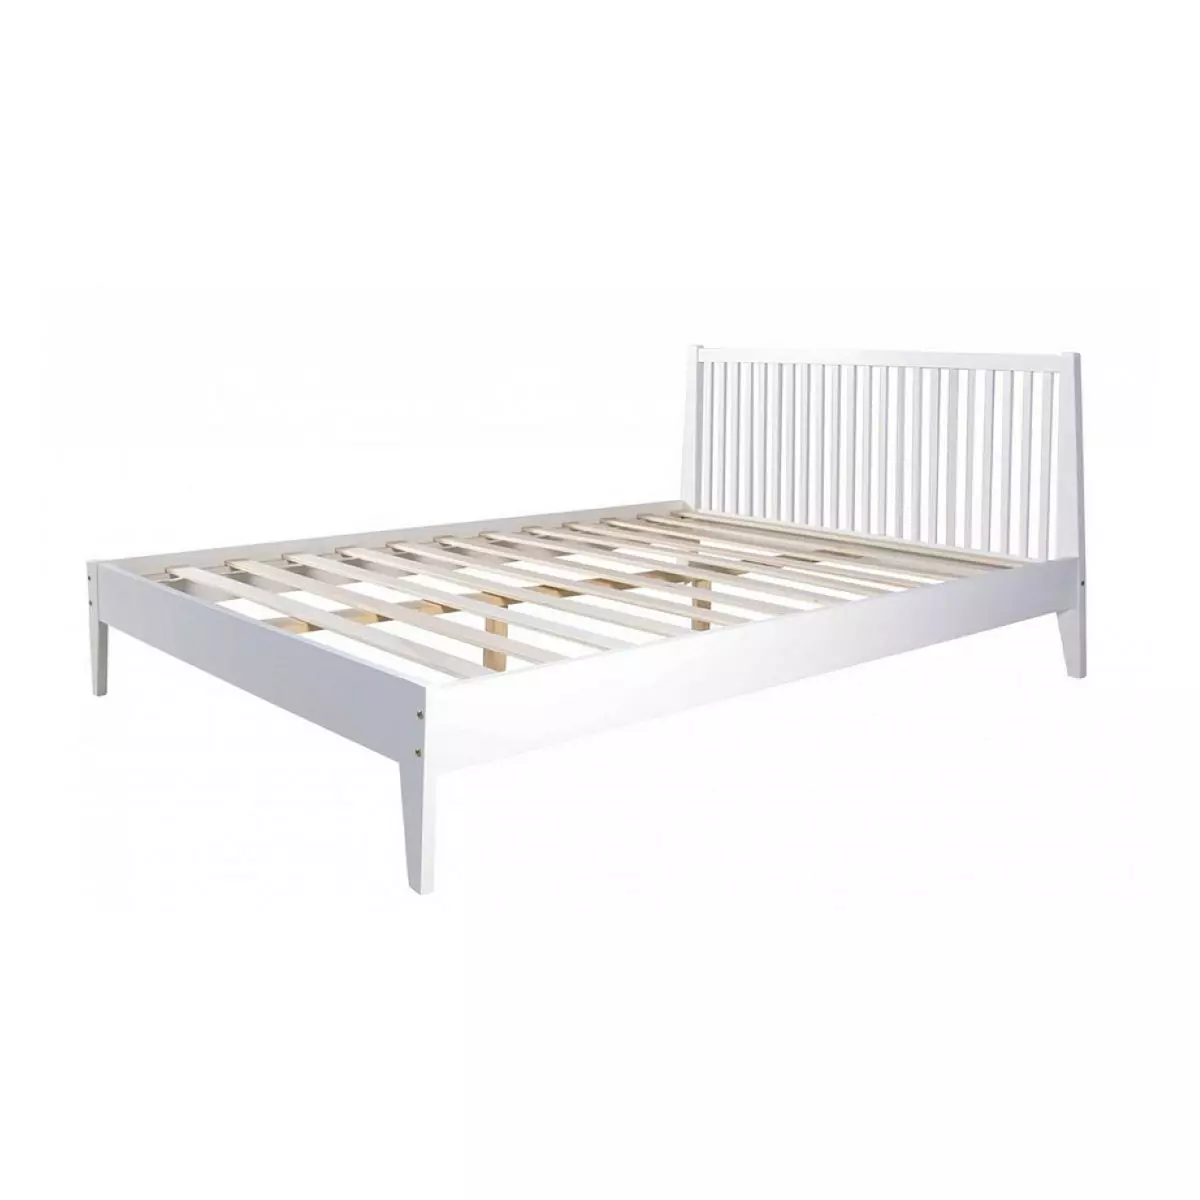 HomeStyle4U Lit double en bois massif 140x200cm blanc pin lit futon a lattes cadre de lit